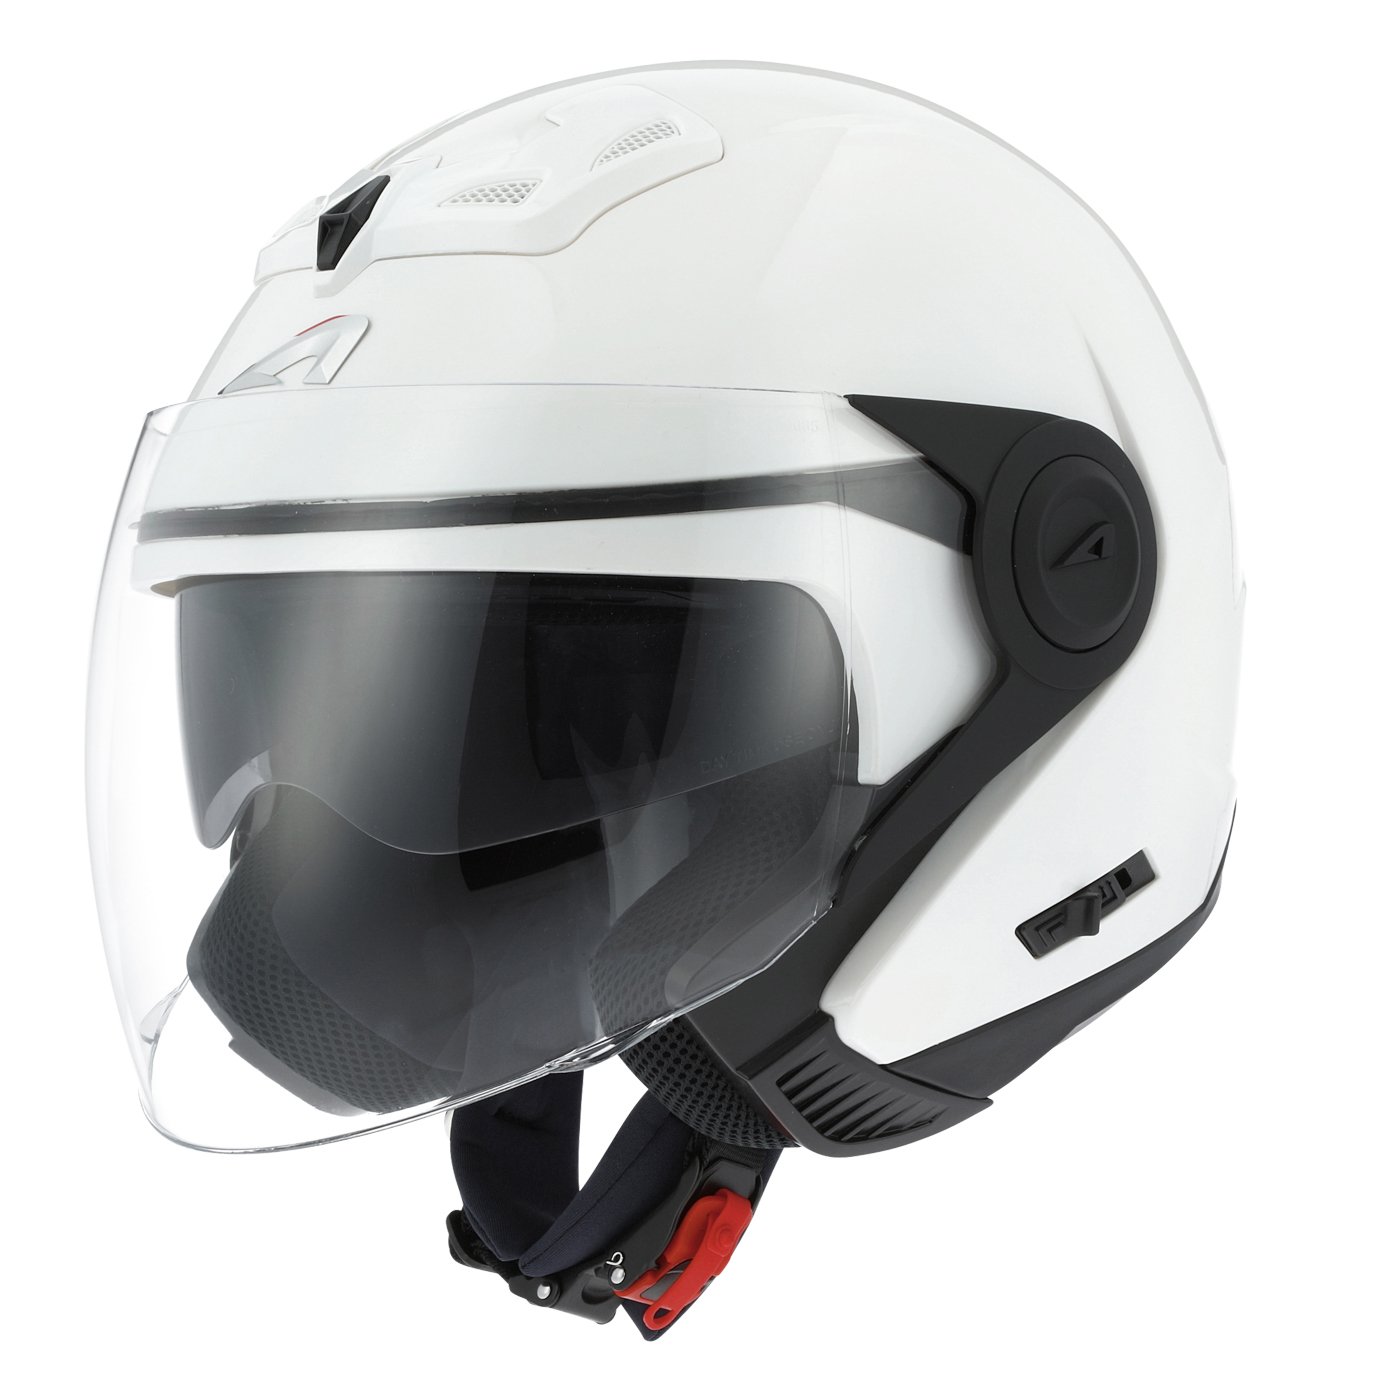 Astone Helmets - Casque jet DJ8 monocolor - Casque jet look rétro - Casque idéal en zone urbaine - Coque en polycarbonate -Gloss white L von Astone Helmets